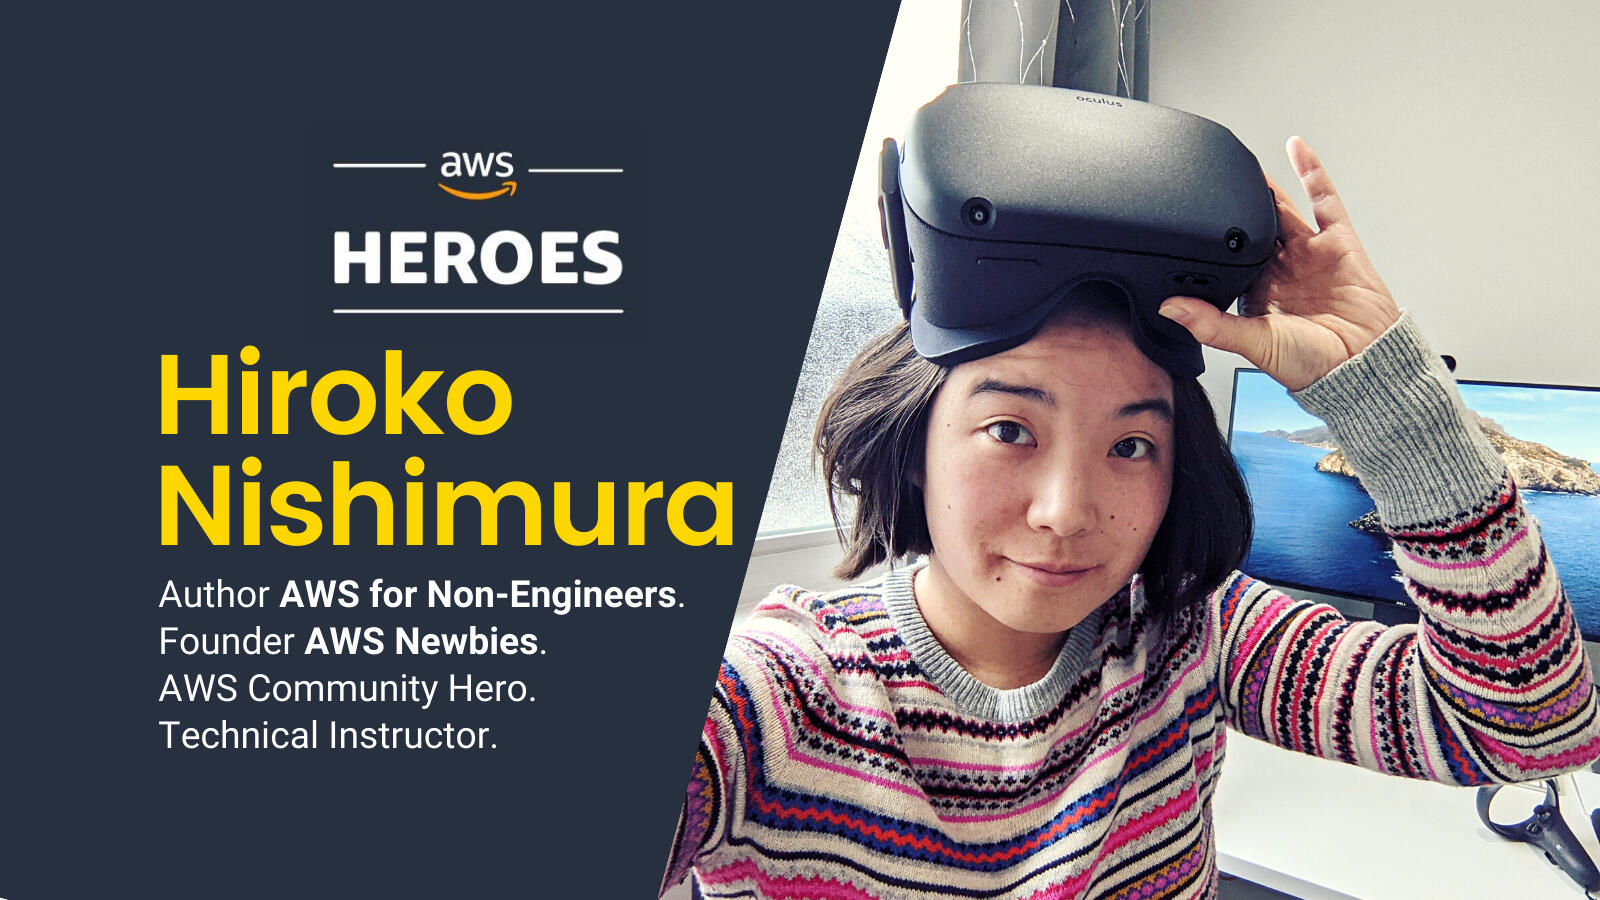 Hiroko Nishimura, AWS Community Hero